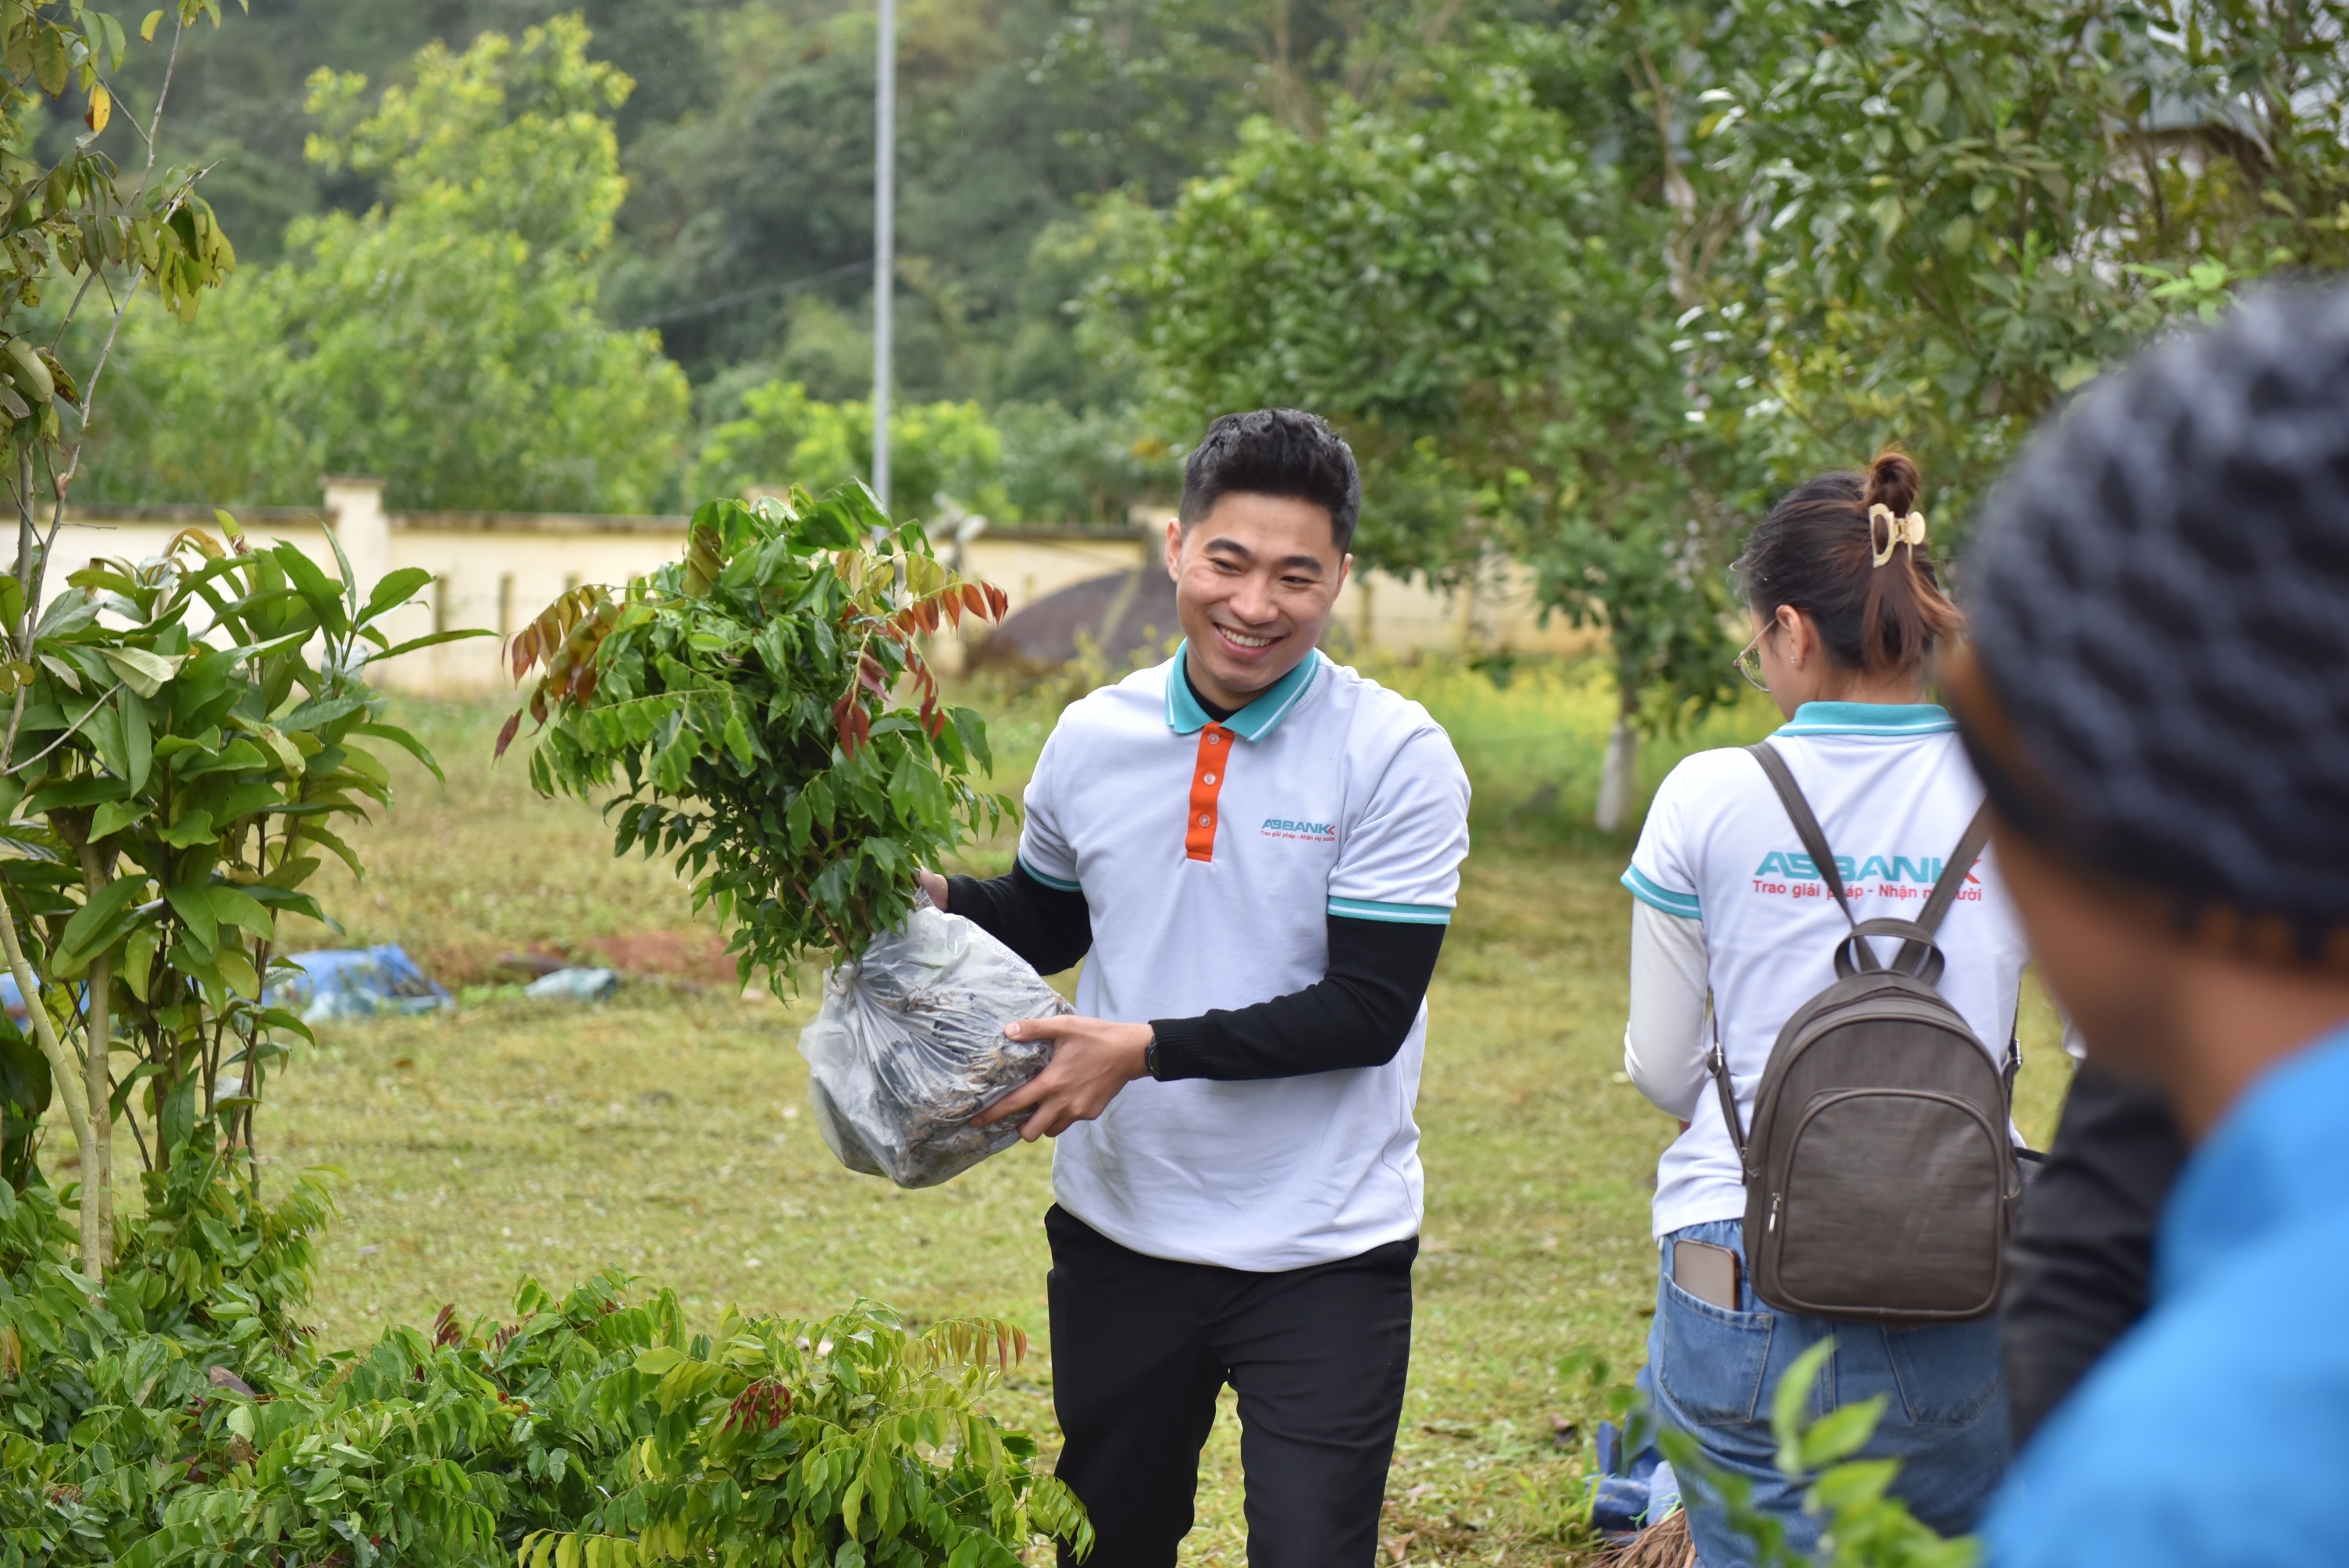 Tham gia cùng Ngân hàng trồng cây hỗ trợ người dân là một trong những hoạt động thiện nguyện ý nghĩa của CBNV ABBANK trong nhiều năm qua.